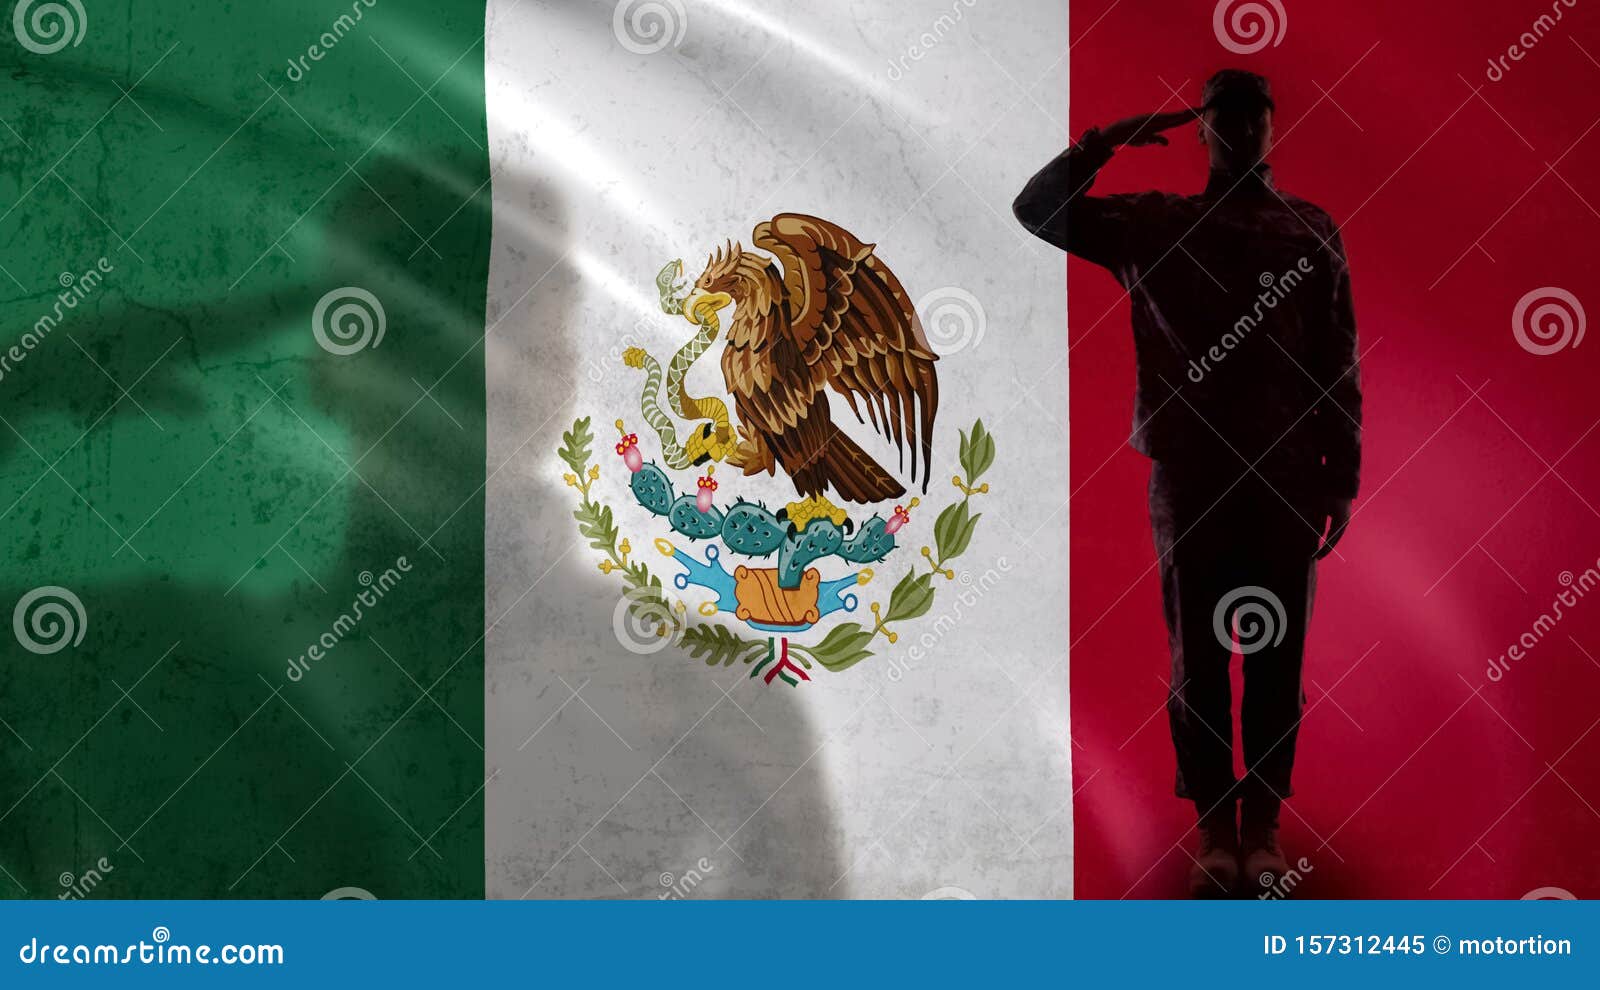 壁纸 : 2048x1360像素, 军队, 女战士, 墨西哥海军陆战队, 军事, 士兵, 战争 2048x1360 - wallhaven ...